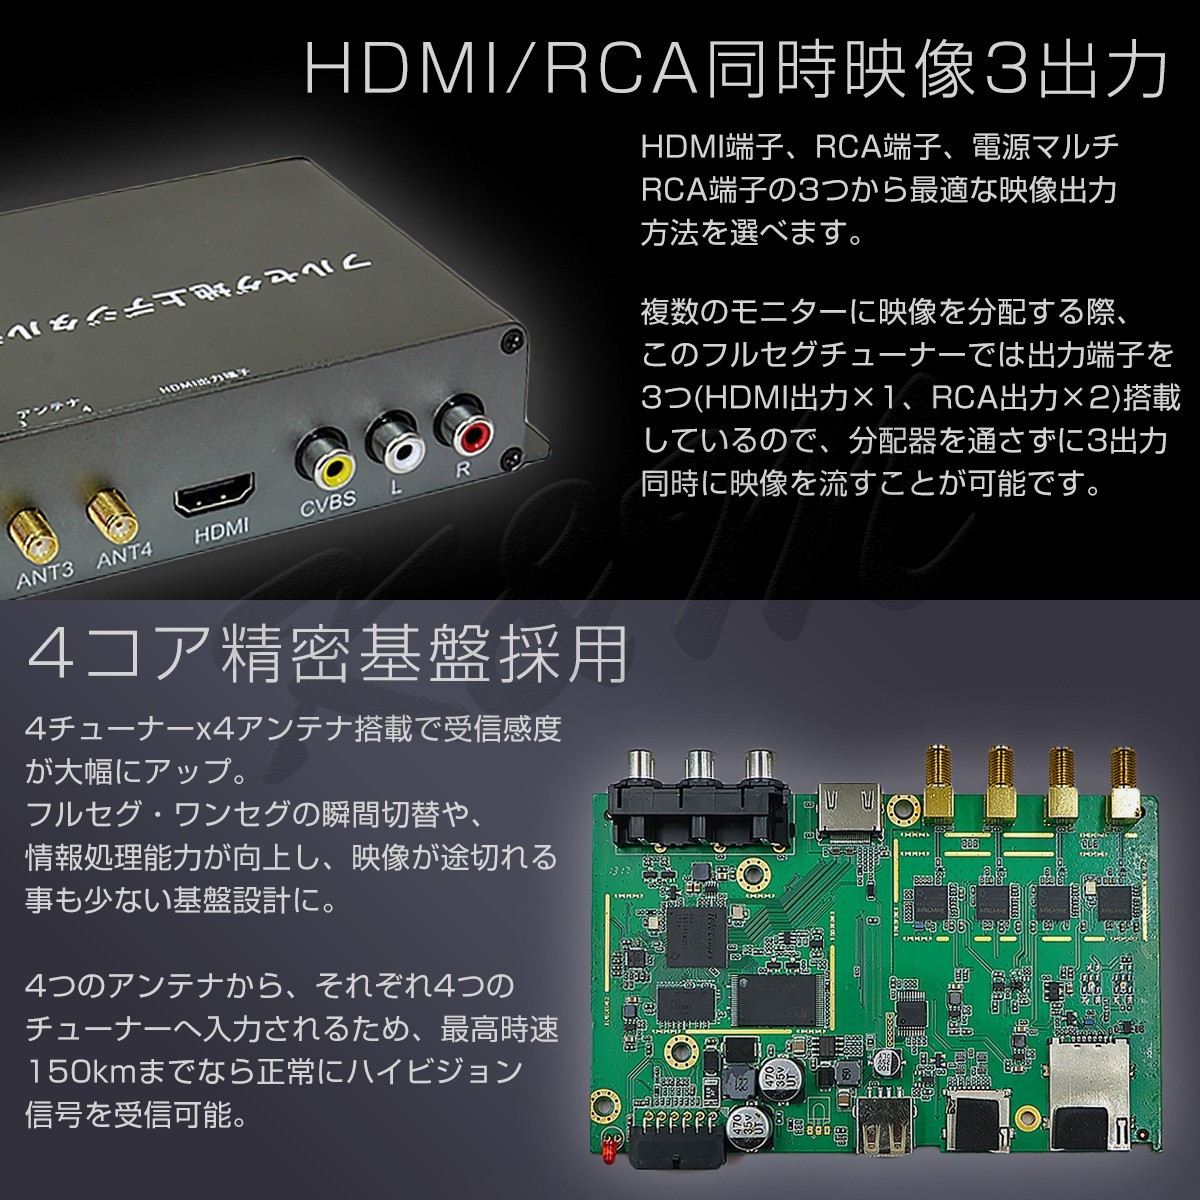  тюнер наземного цифрового радиовещания навигационная система 1 SEG Full seg HDMI 4x4 4 тюнер 4 антенна высокая эффективность высокое разрешение TV автомобильный miniB-CAS карта имеется 6 месяцев гарантия 